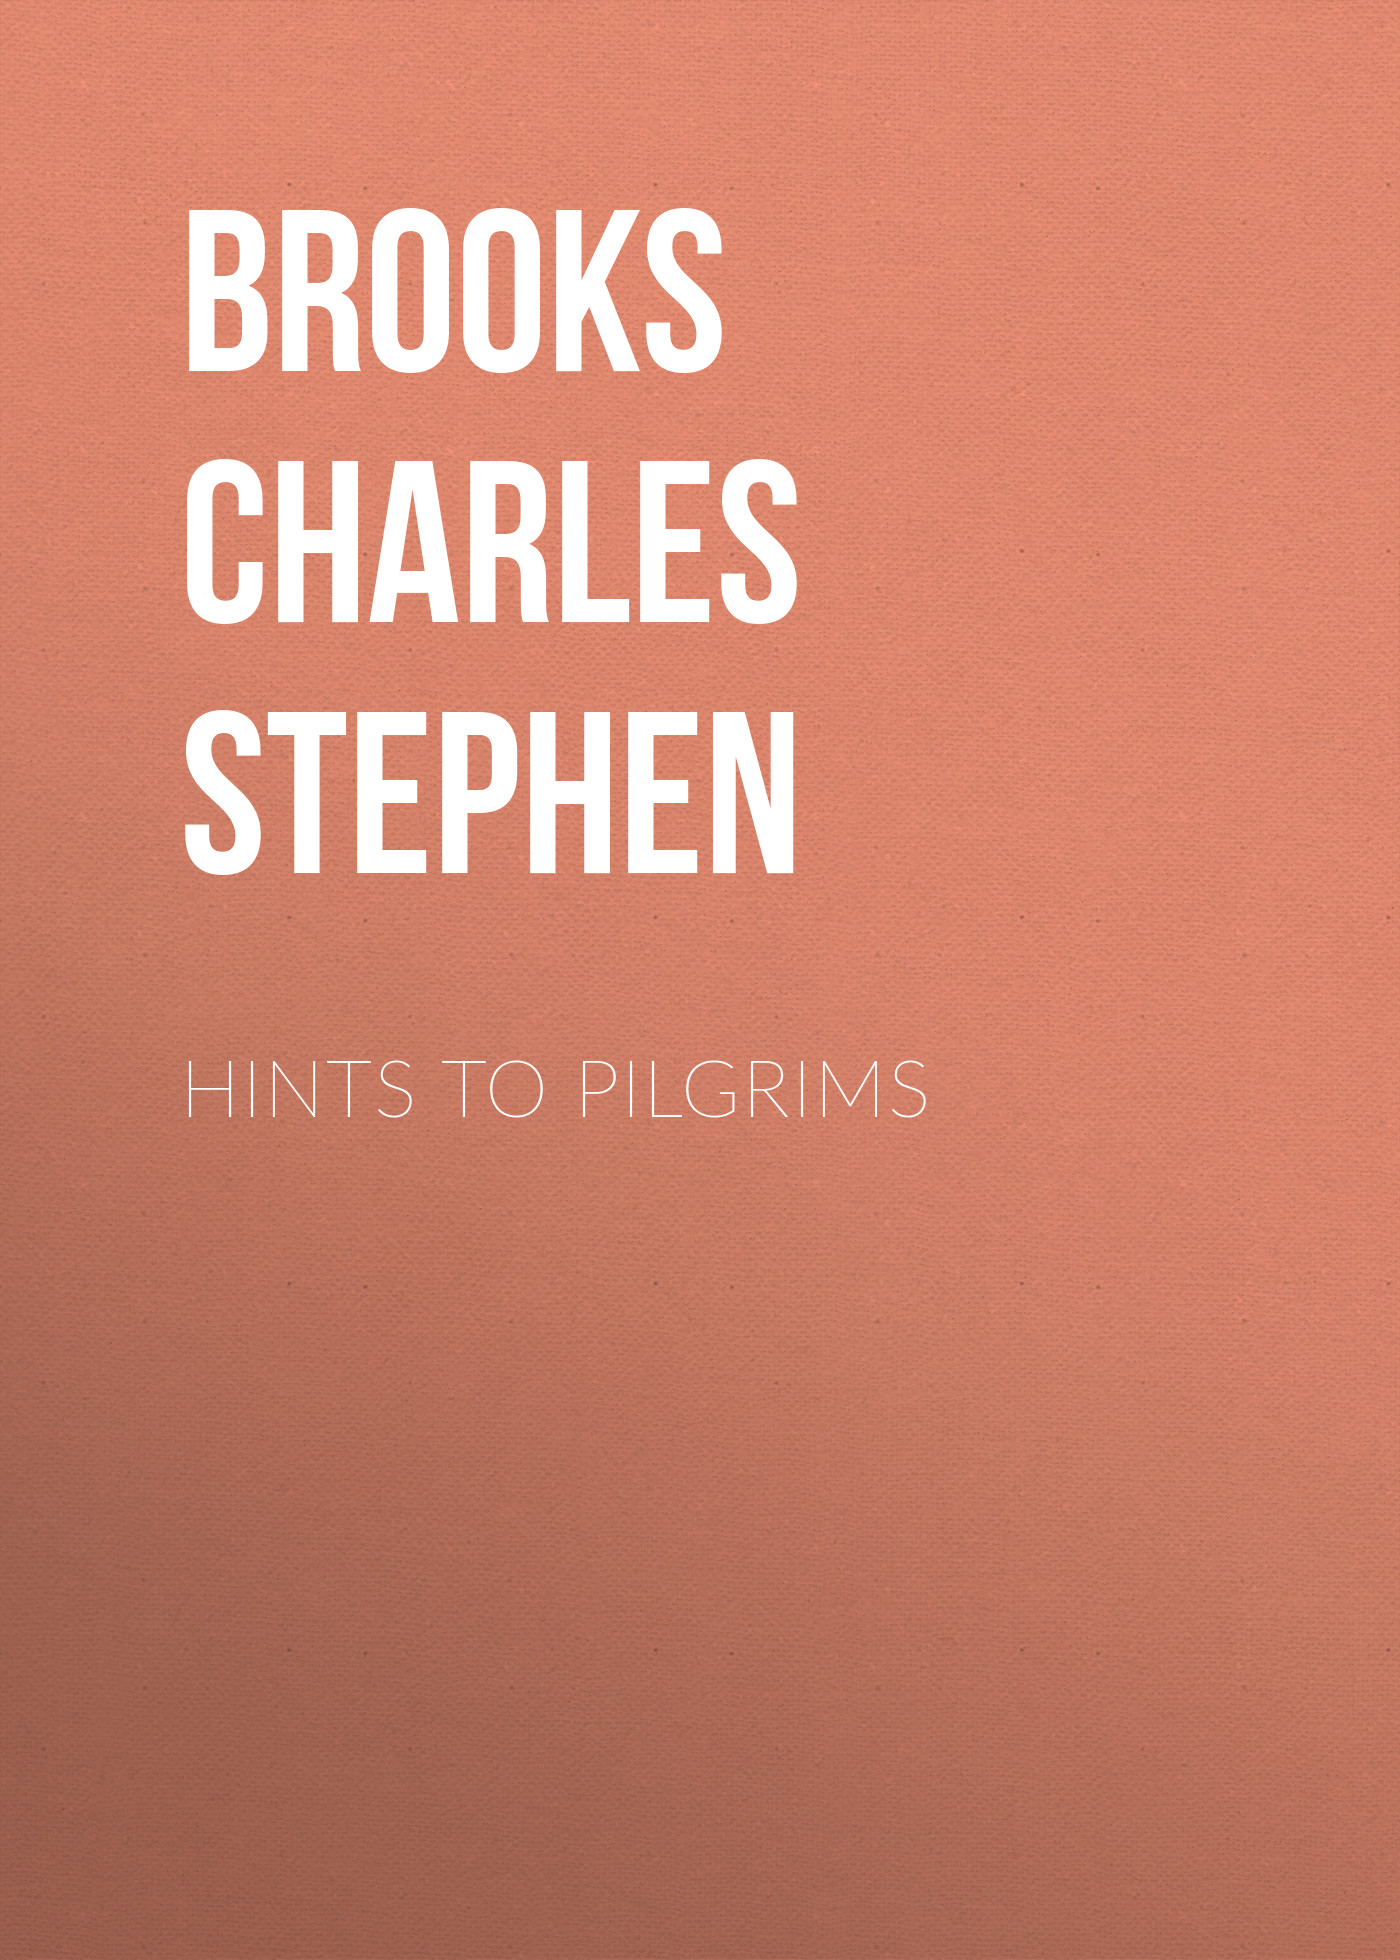 Книга Hints to Pilgrims из серии , созданная Charles Brooks, может относится к жанру Зарубежная старинная литература, Зарубежная классика. Стоимость электронной книги Hints to Pilgrims с идентификатором 24180260 составляет 0.90 руб.